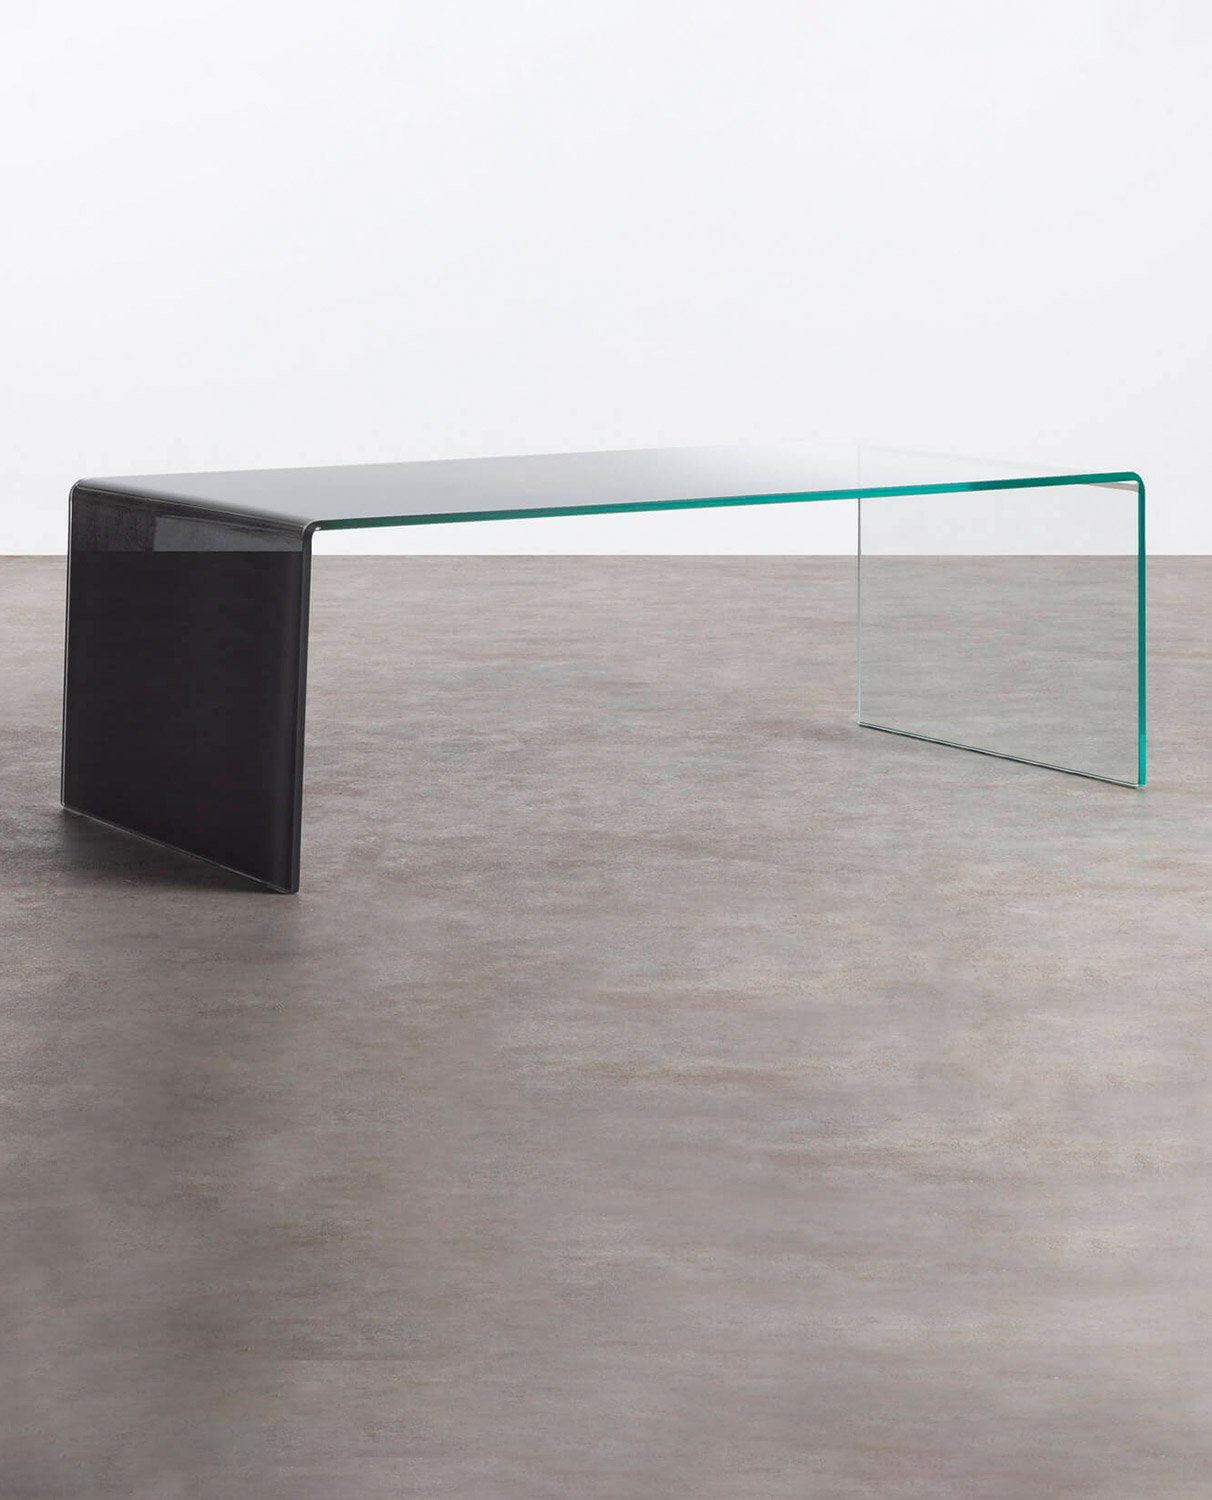 Tavolino Rettangolare in Cristallo Temperato (120x60 cm) Lidon, immagine della galleria 1